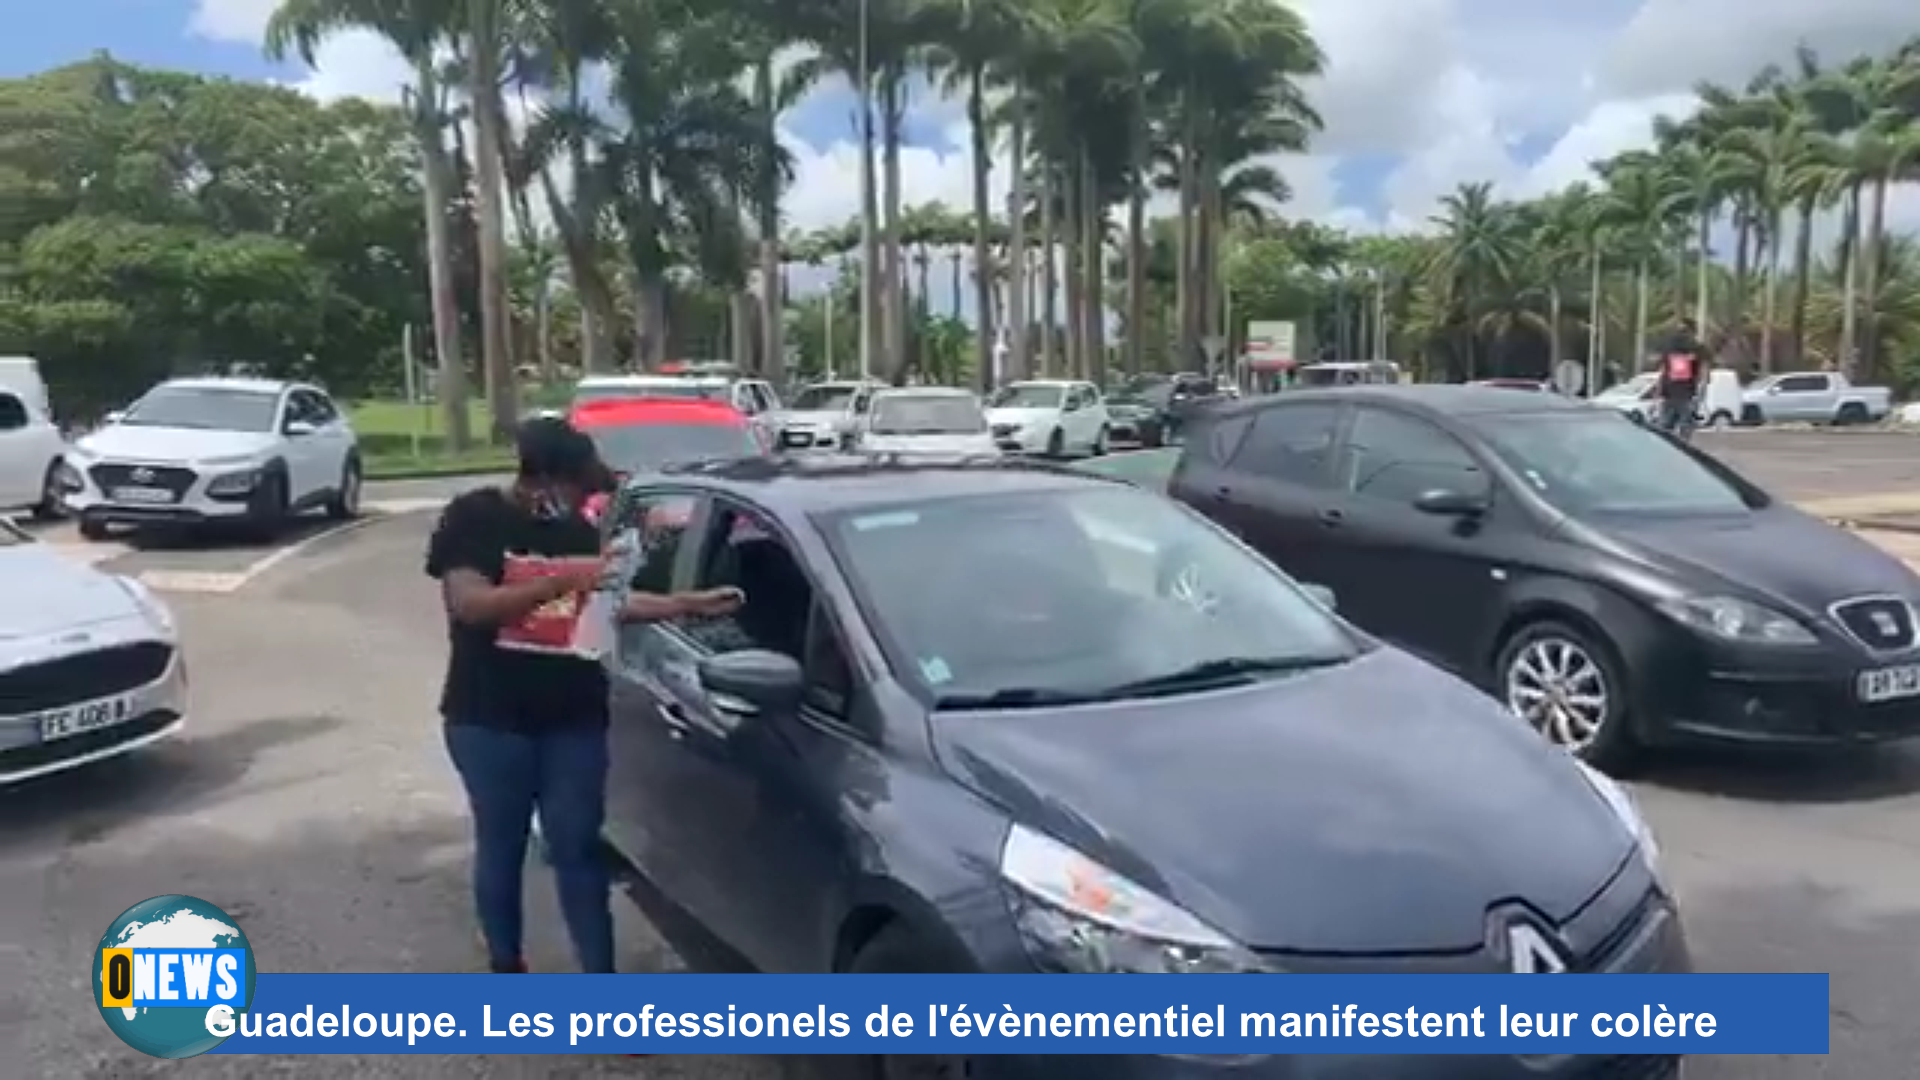 [Vidéo] Onews Guadeloupe. Les professionels de l’évènementiel manifestent leur colère (canal 10)